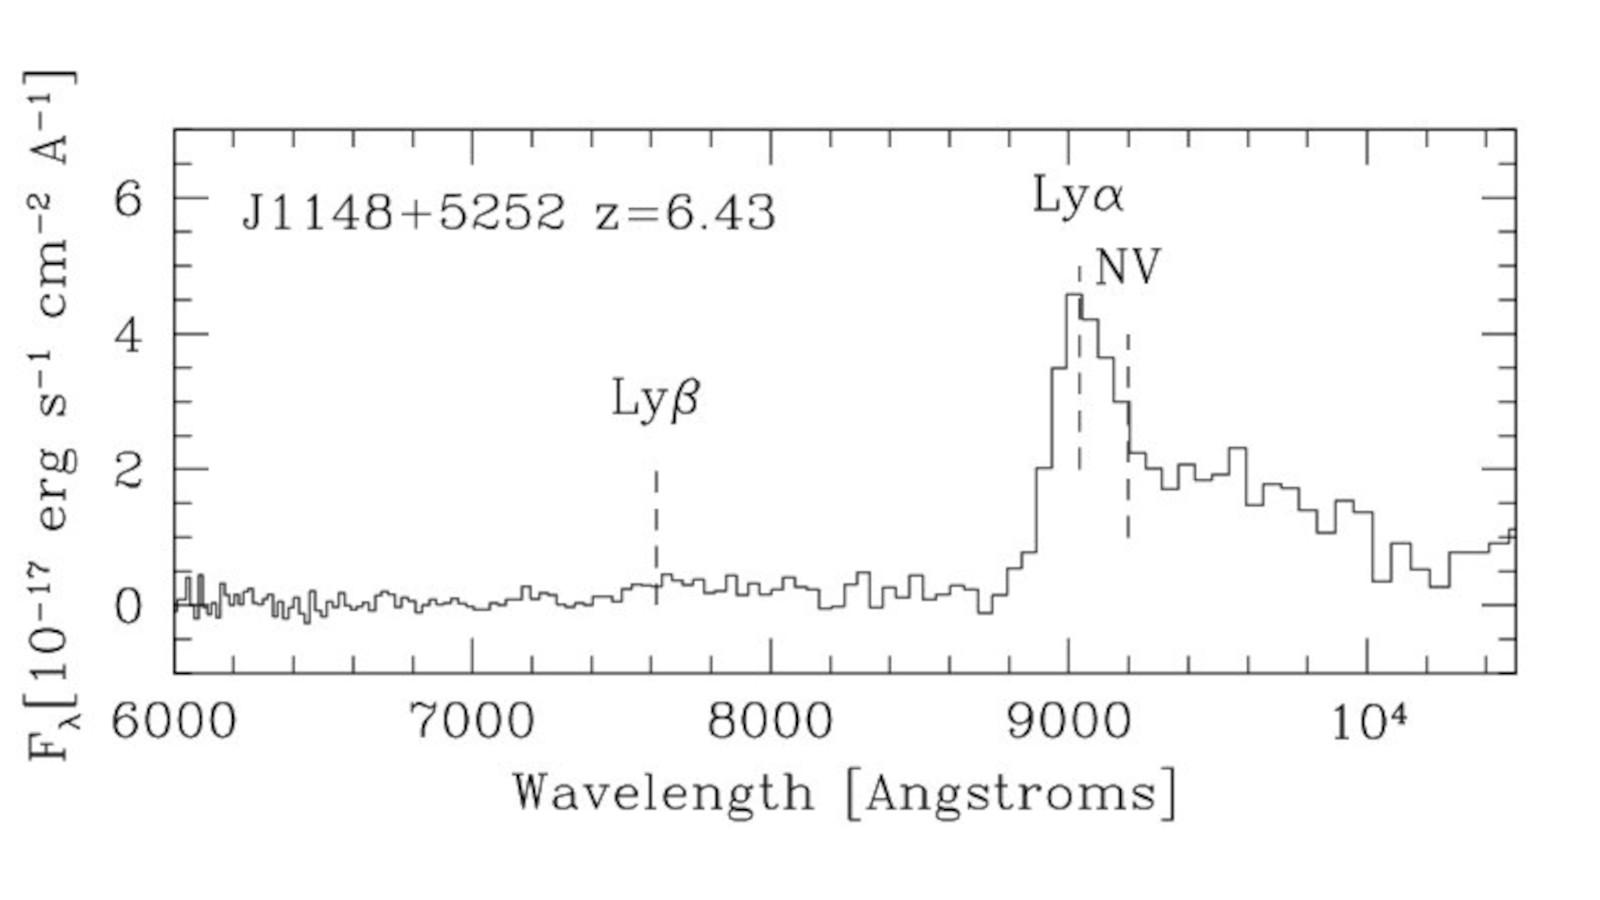 Spectrum of high-redshift quasar SDSS J1148+5252 with OSMOS